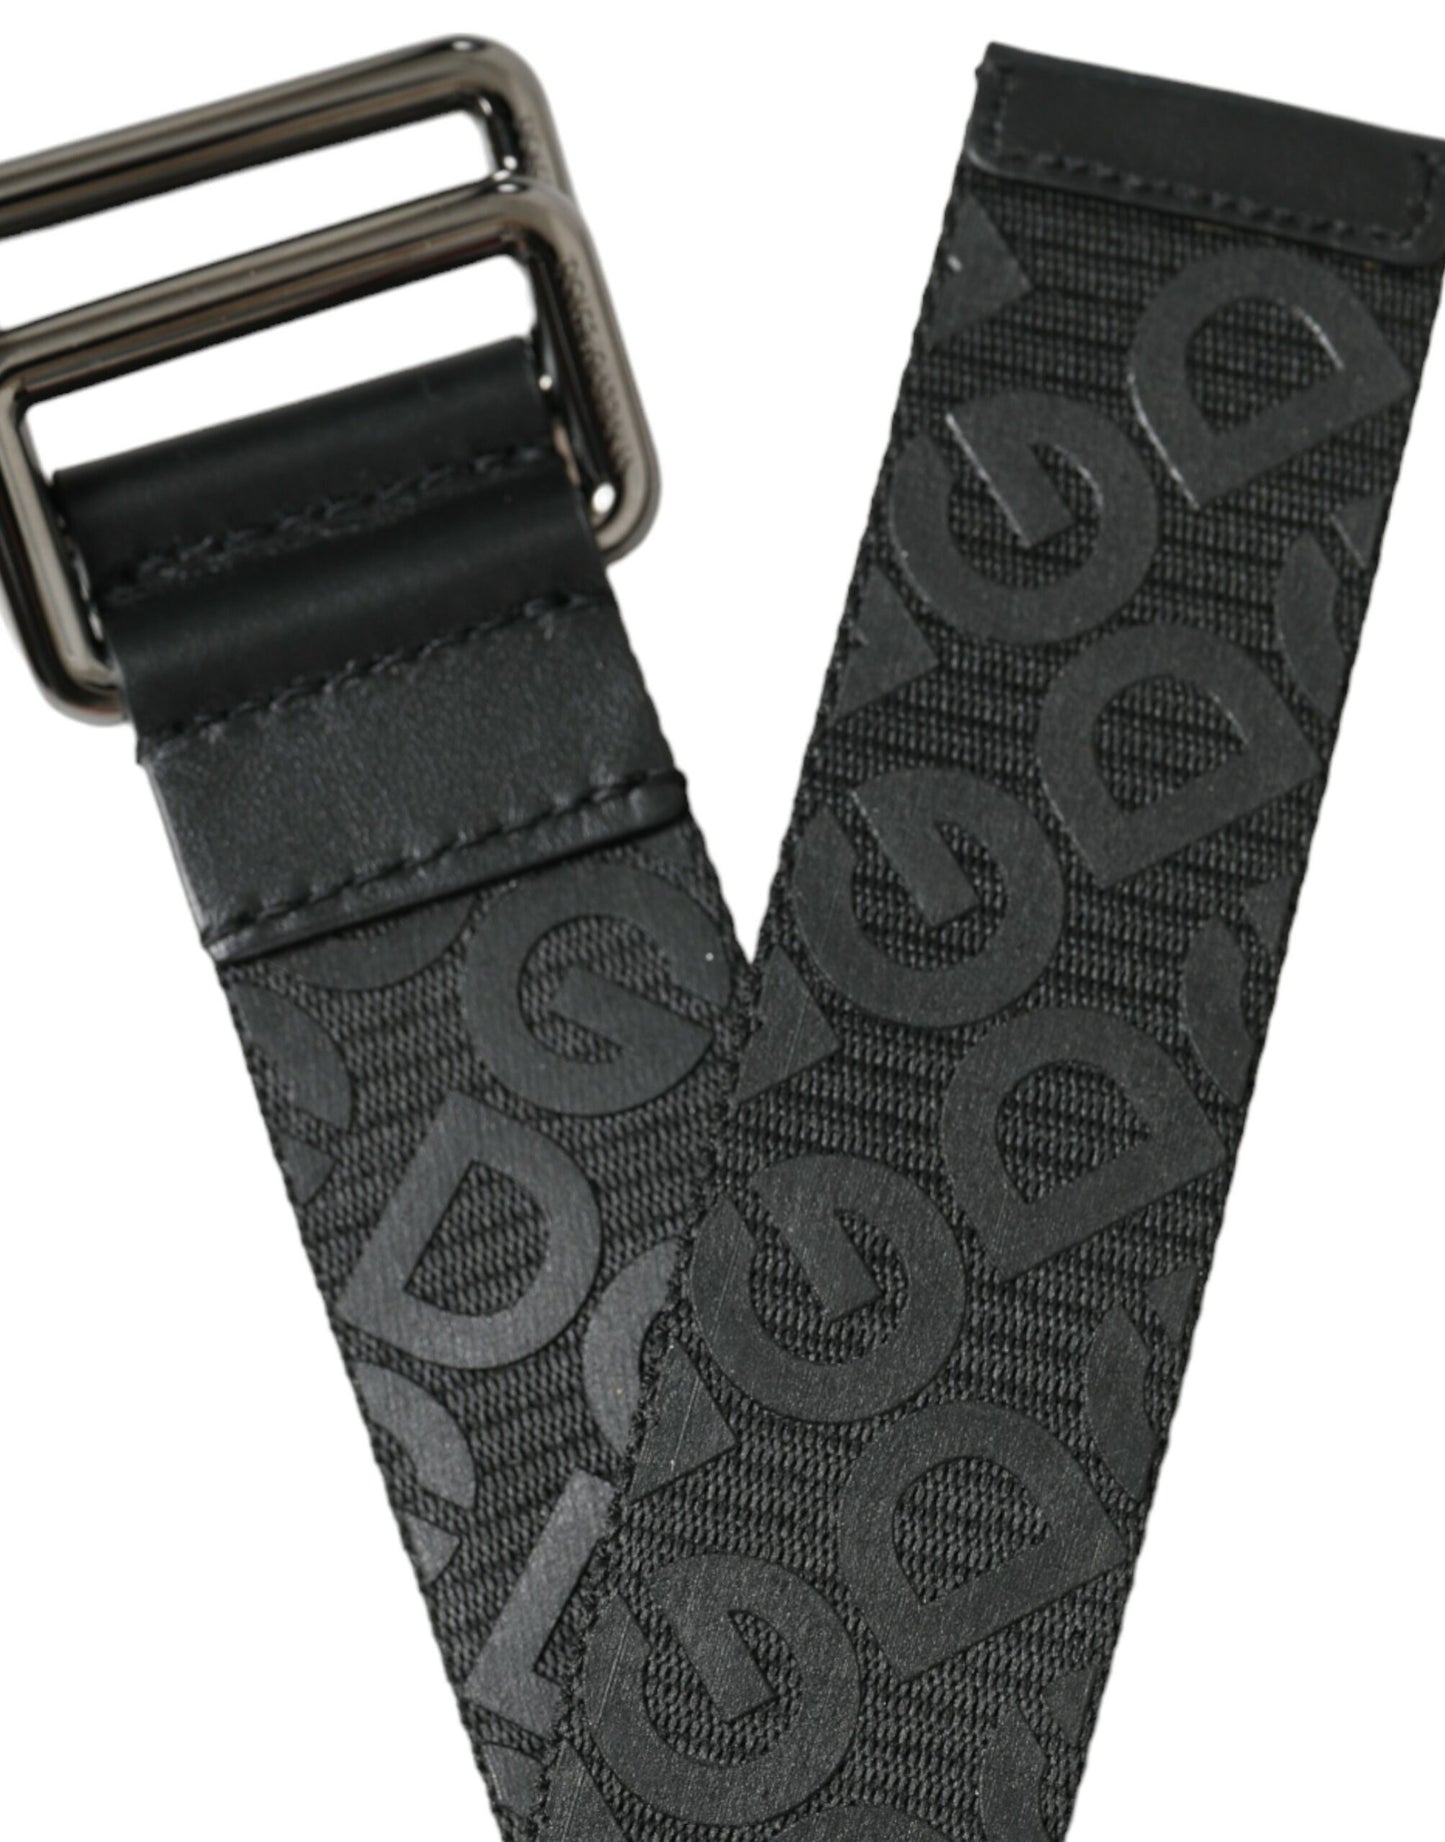 Elegant Black Leather-Blend Belt